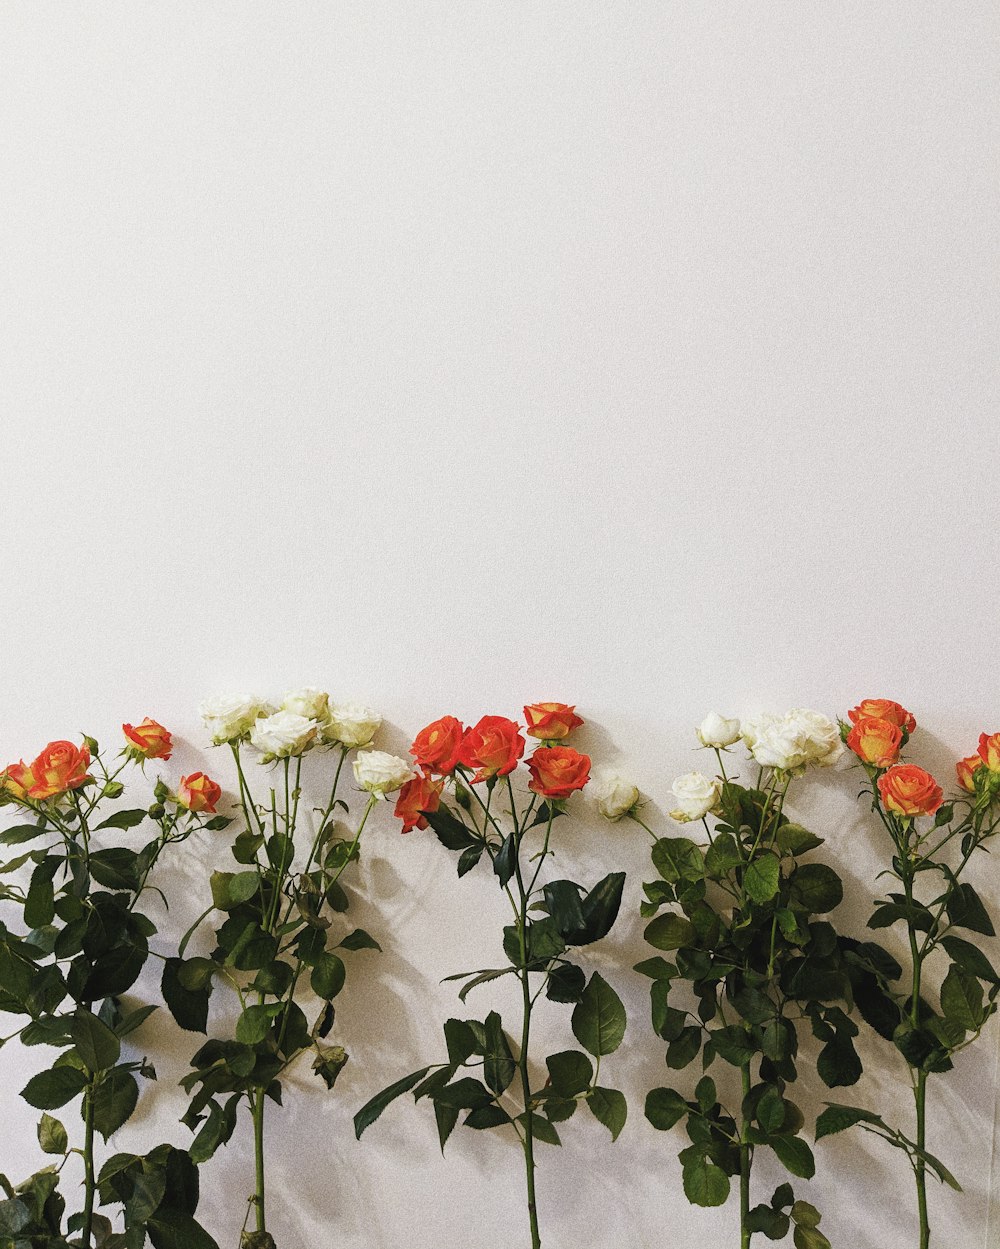 Flores de rosas rojas y blancas